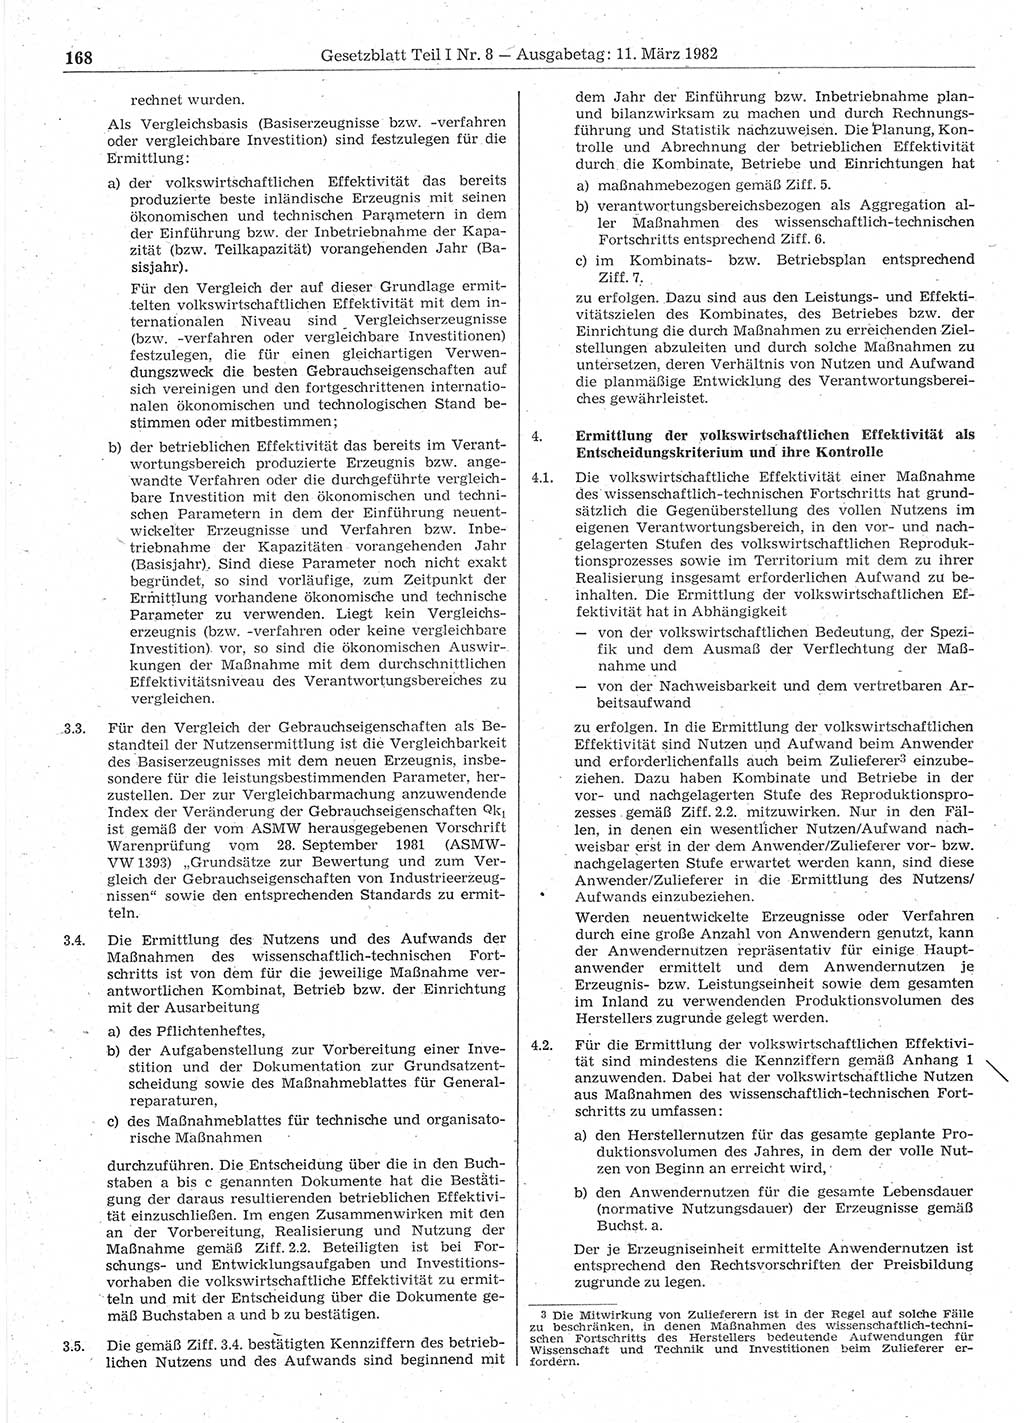 Gesetzblatt (GBl.) der Deutschen Demokratischen Republik (DDR) Teil Ⅰ 1982, Seite 168 (GBl. DDR Ⅰ 1982, S. 168)